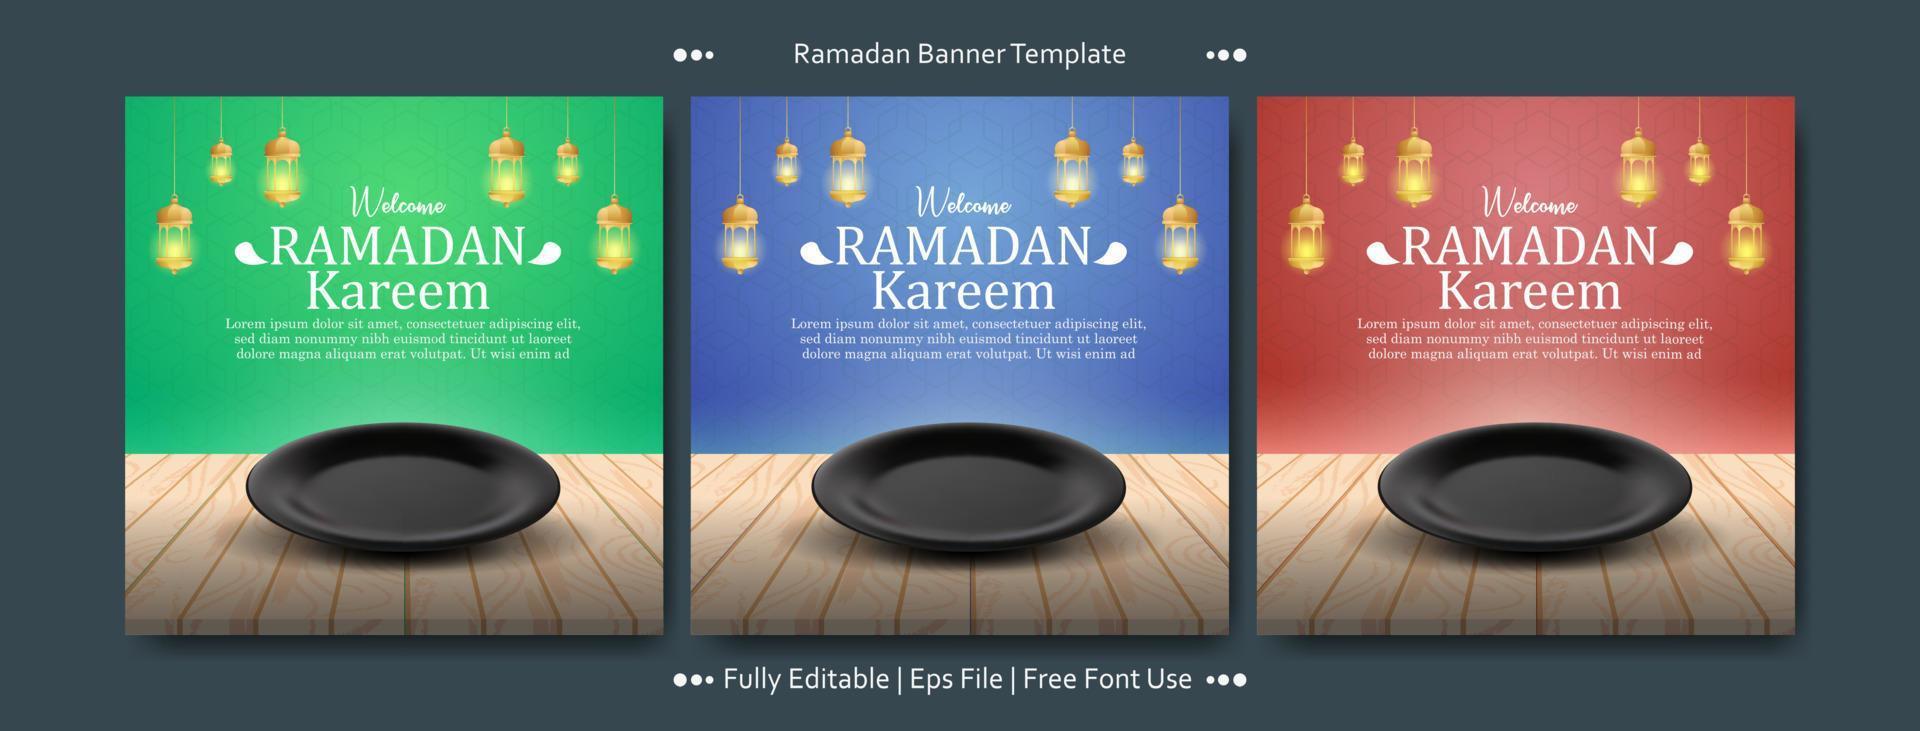 ramadan kareem med tom tallrik fyrkantig banner mall samling vektor